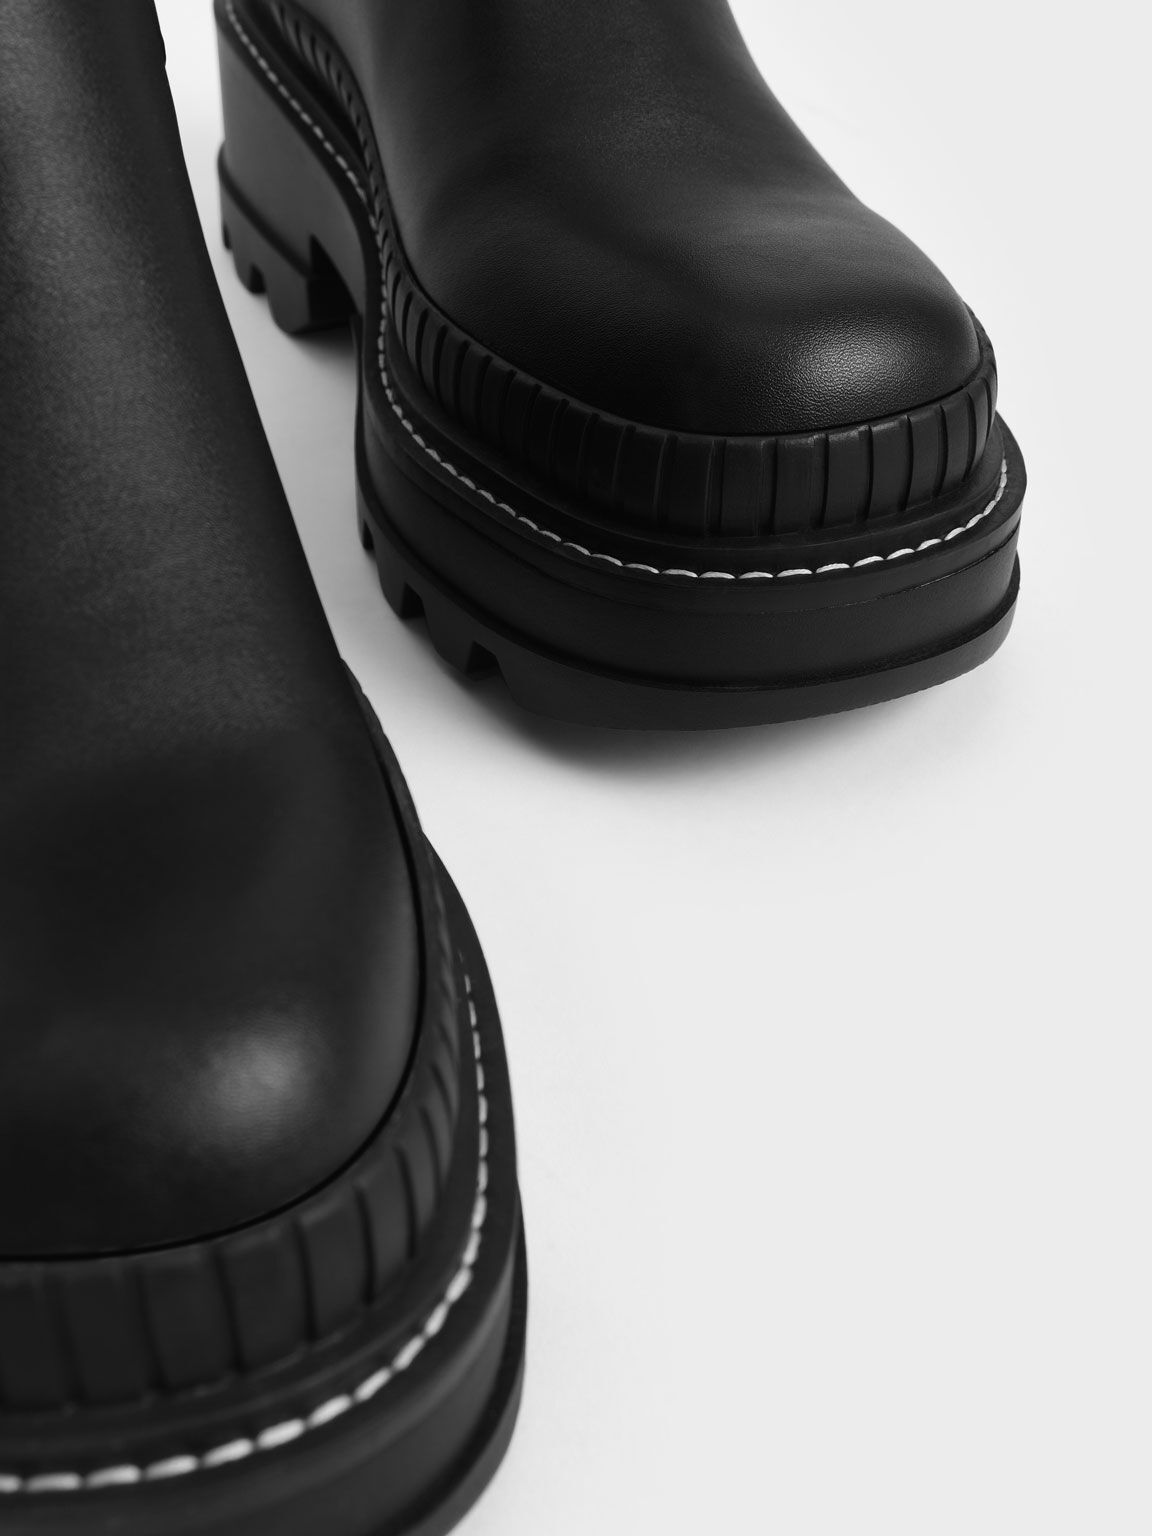 Rhys Chelsea Calf Boots, Black, hi-res